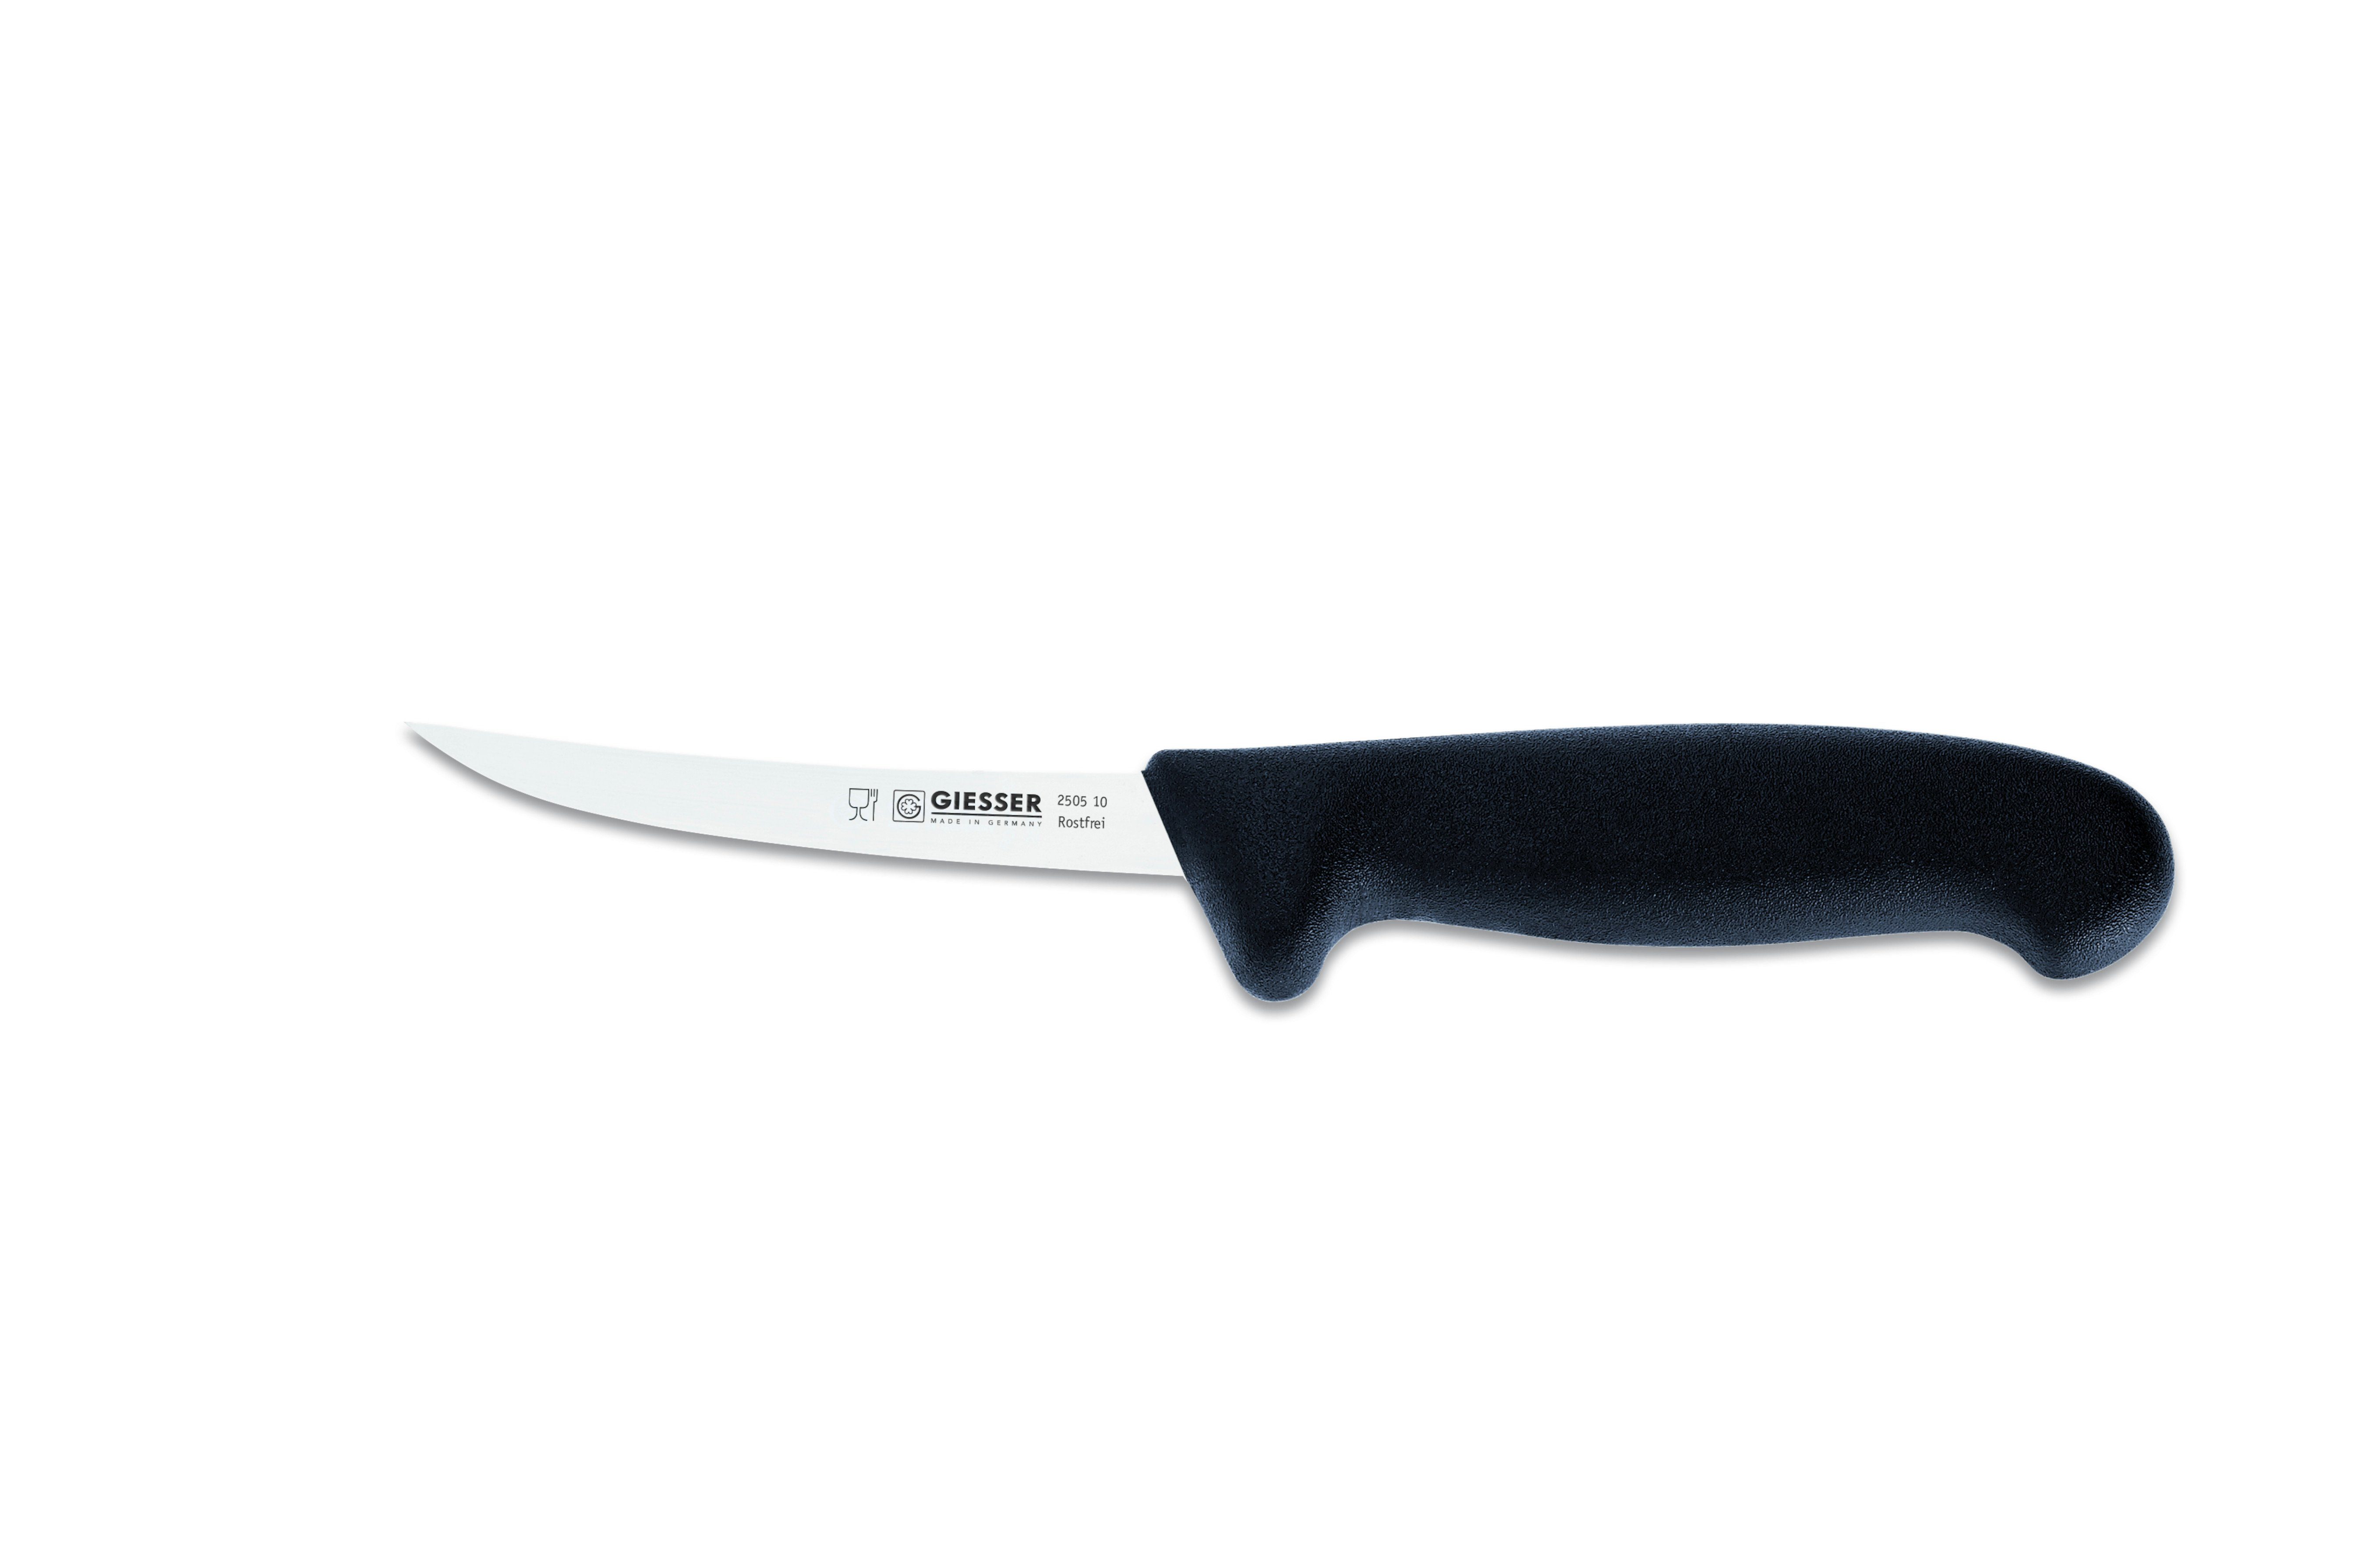 Giesser Messer Ausbeinmesser Fleischermesser 2505 13-17, Klingenstärke: sehr flexibel, flexibel, stark Schwarz